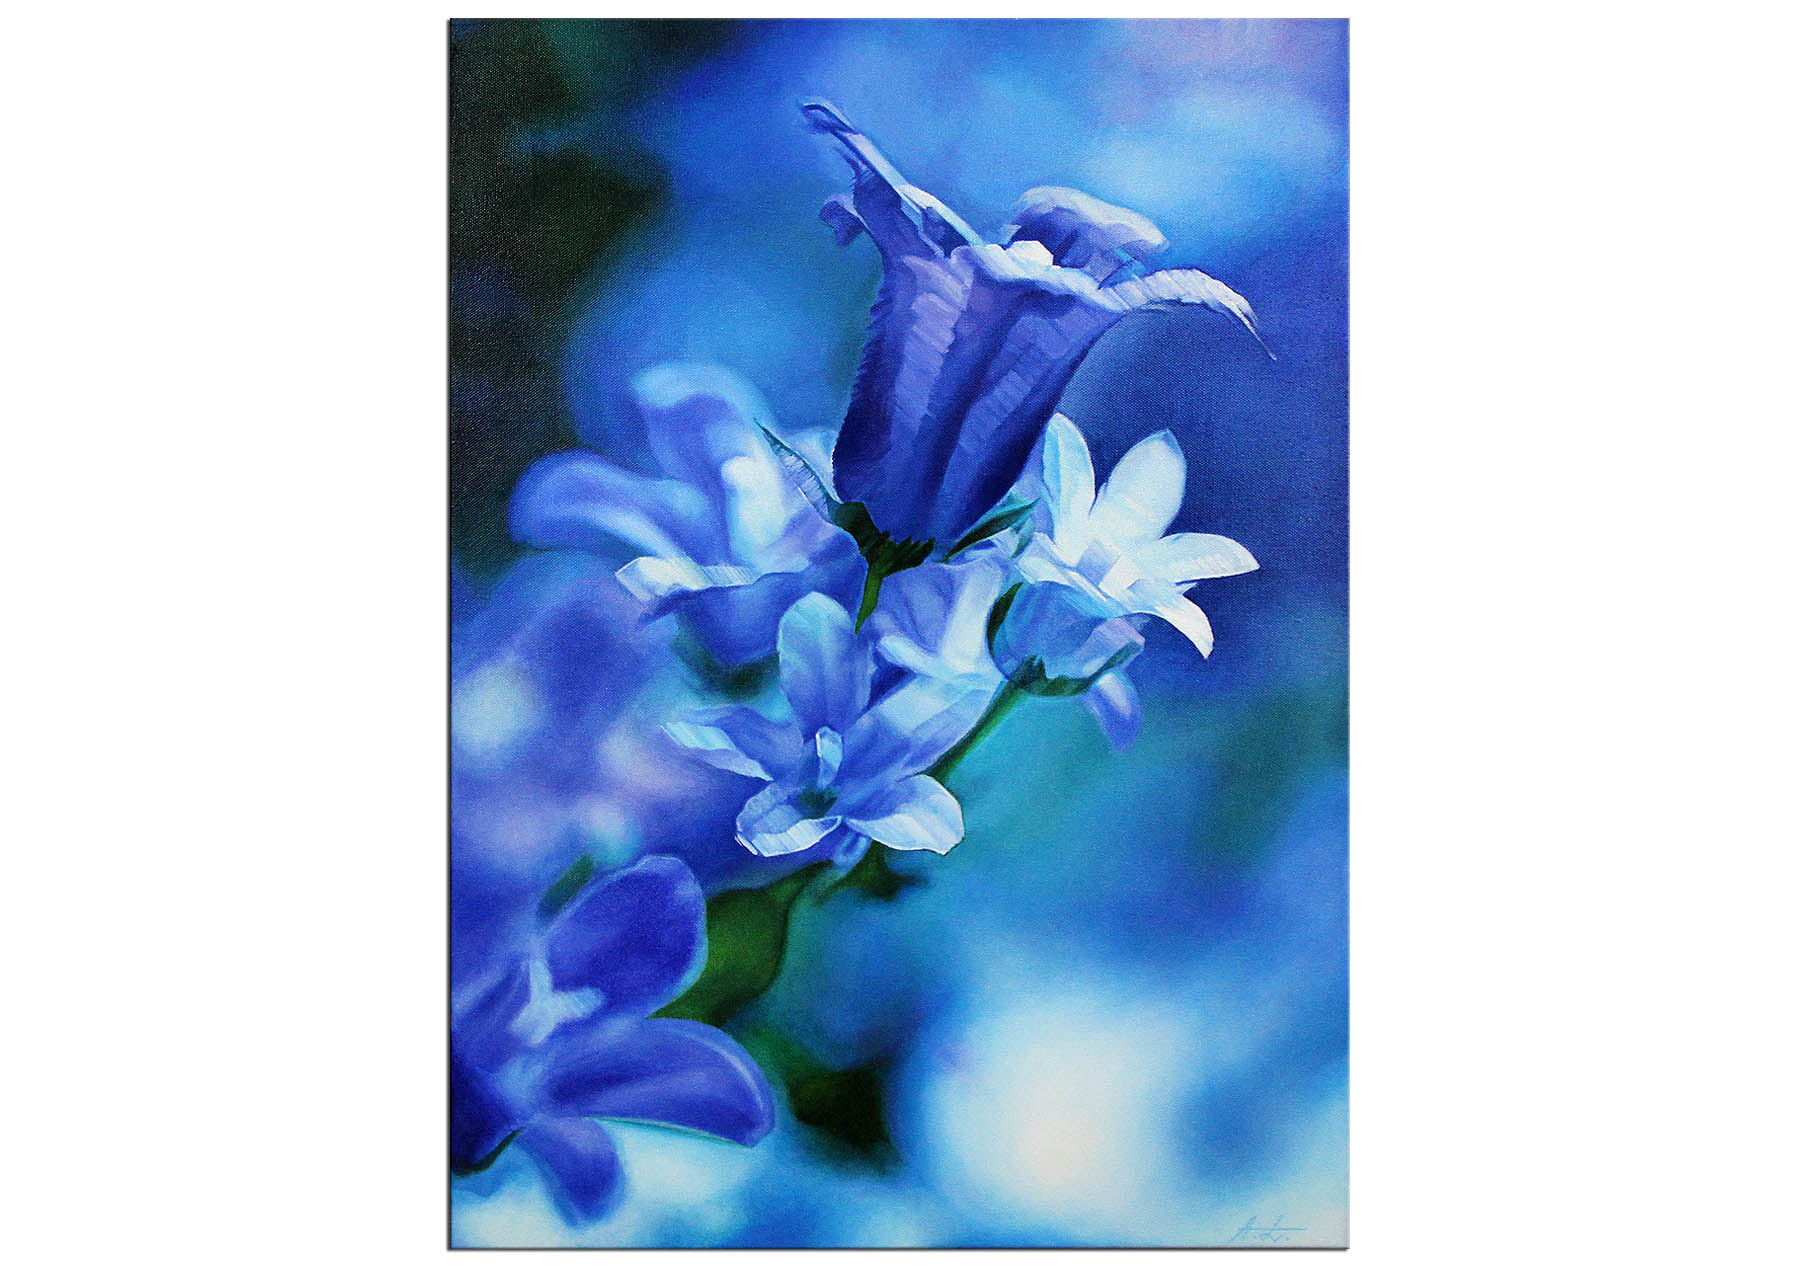 Ölmalerei, Andy Larrett: "Blaue Glockenblumen"